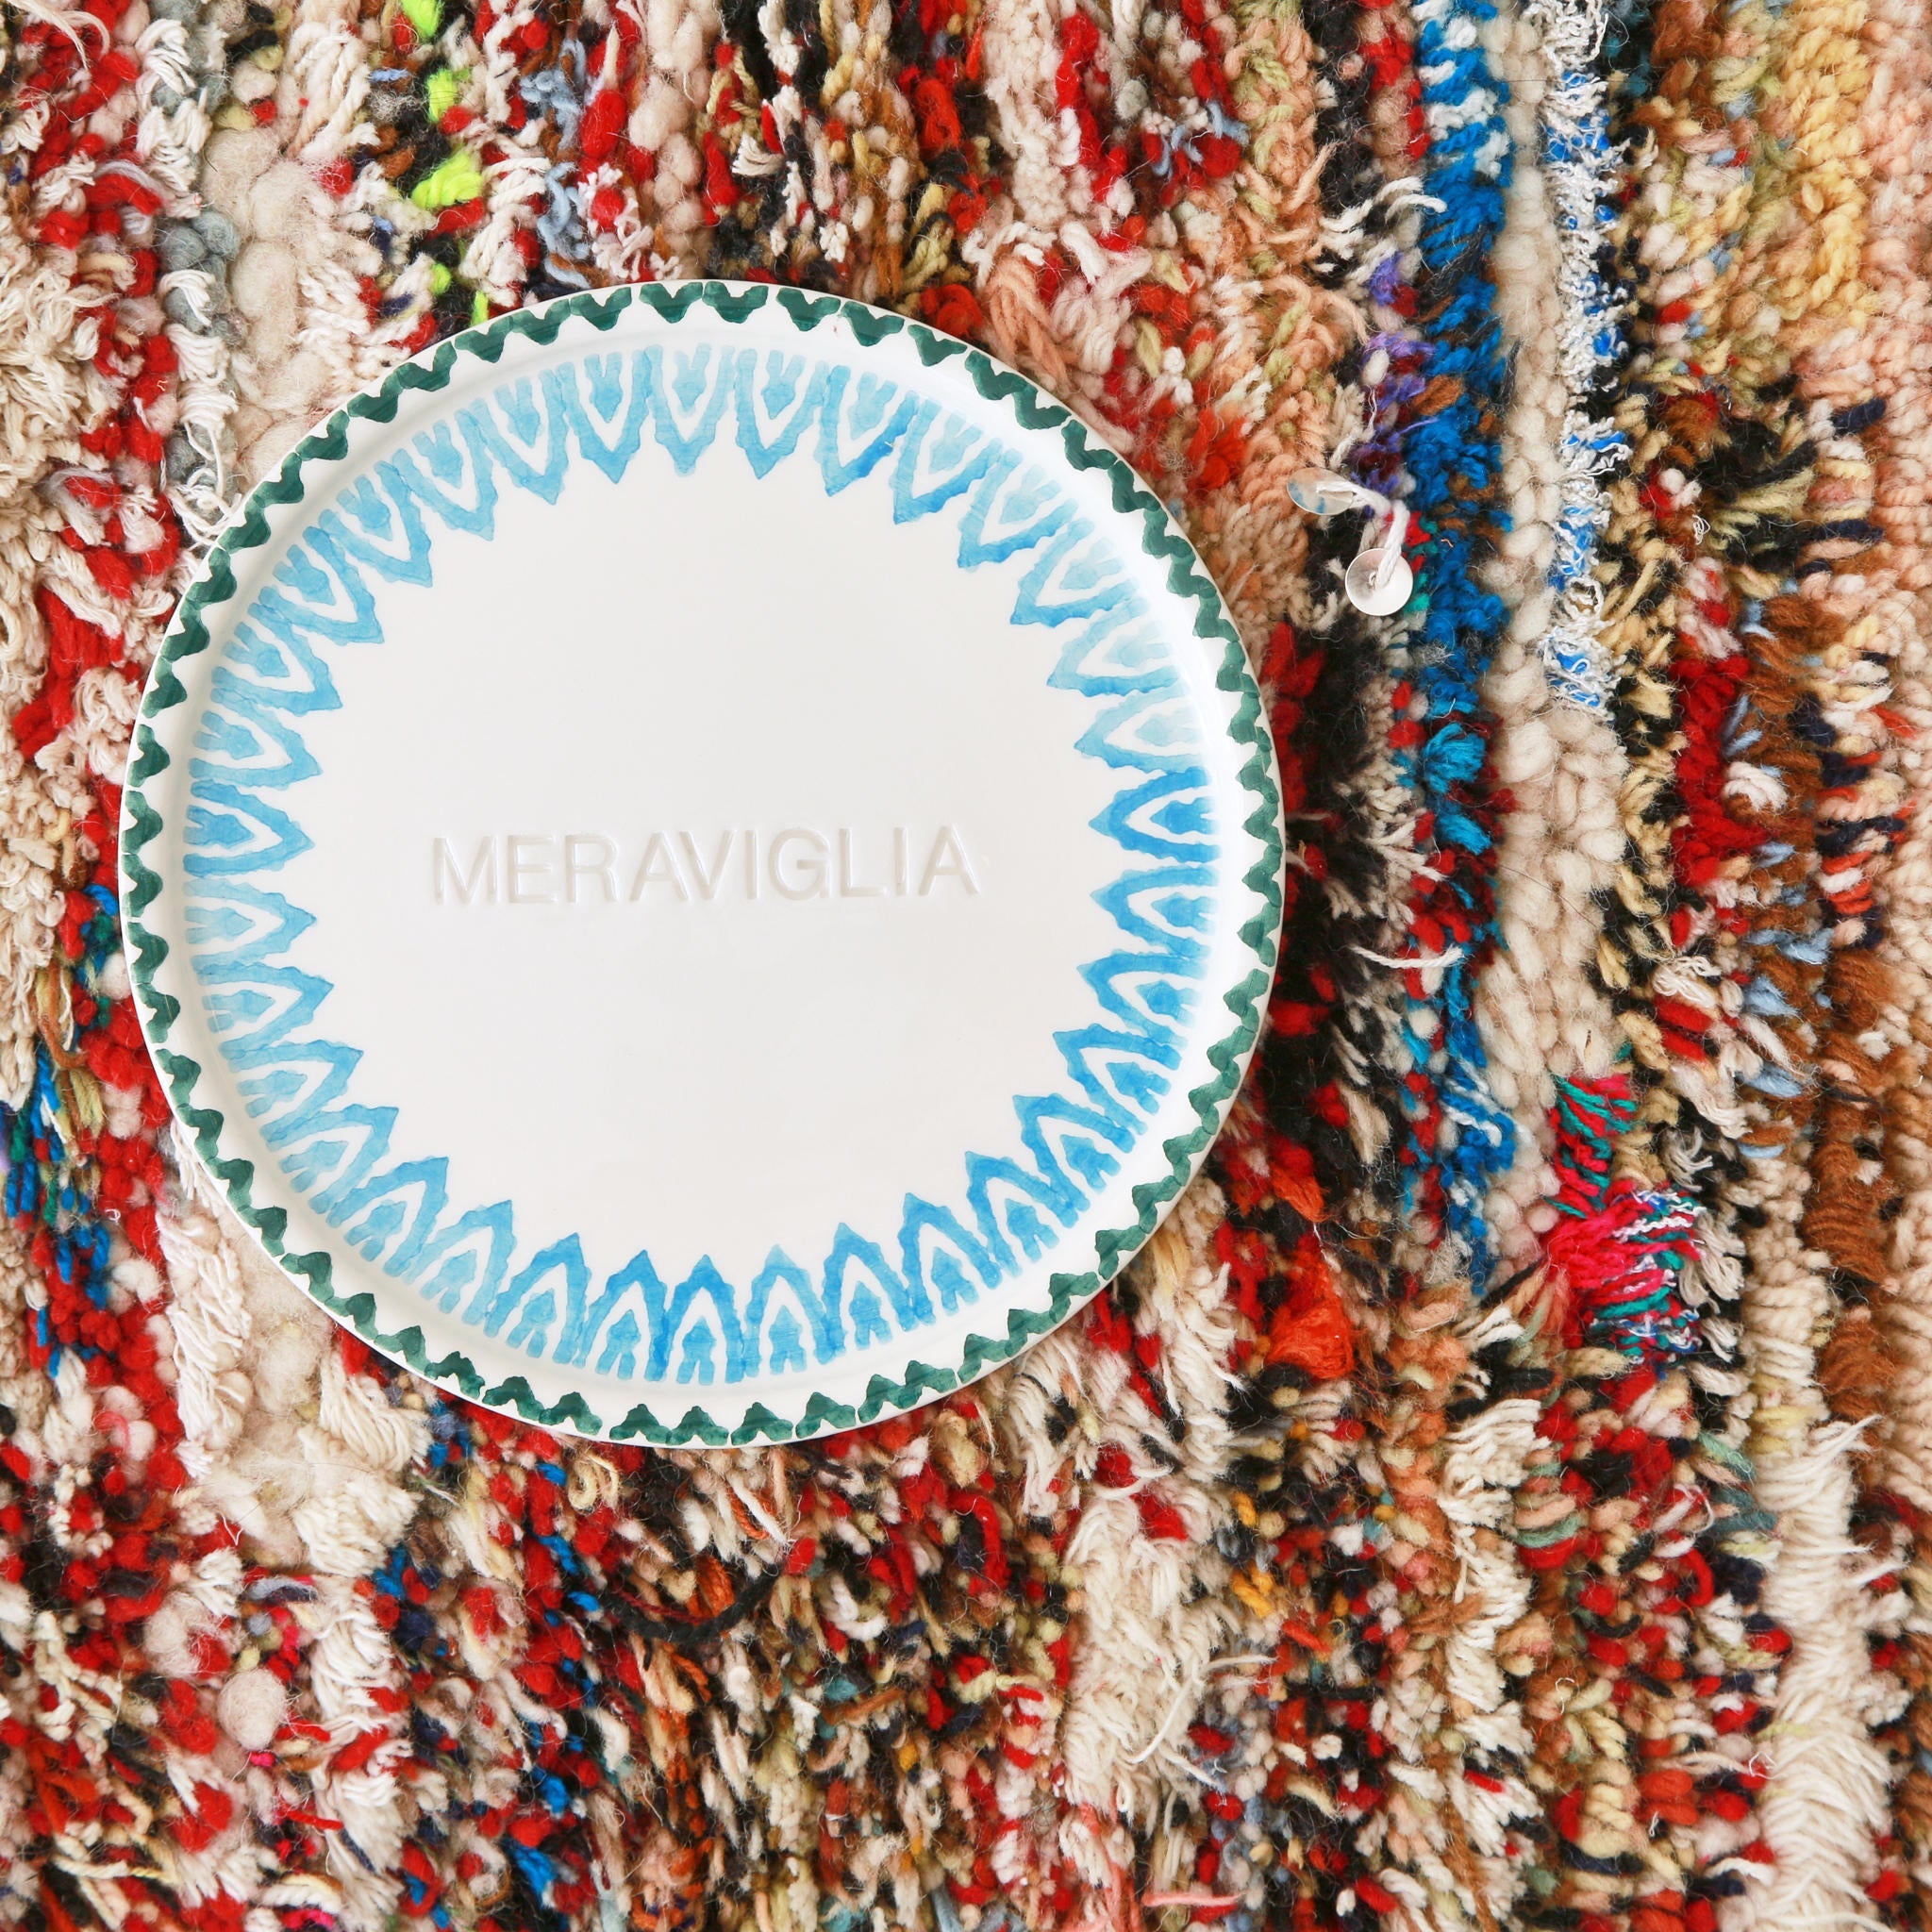 dettaglio di un piccolo tappeto marocchino realizzato con resti di lana e filati colorati con sopra un piatto bianco dove è scritta la parola meraviglia